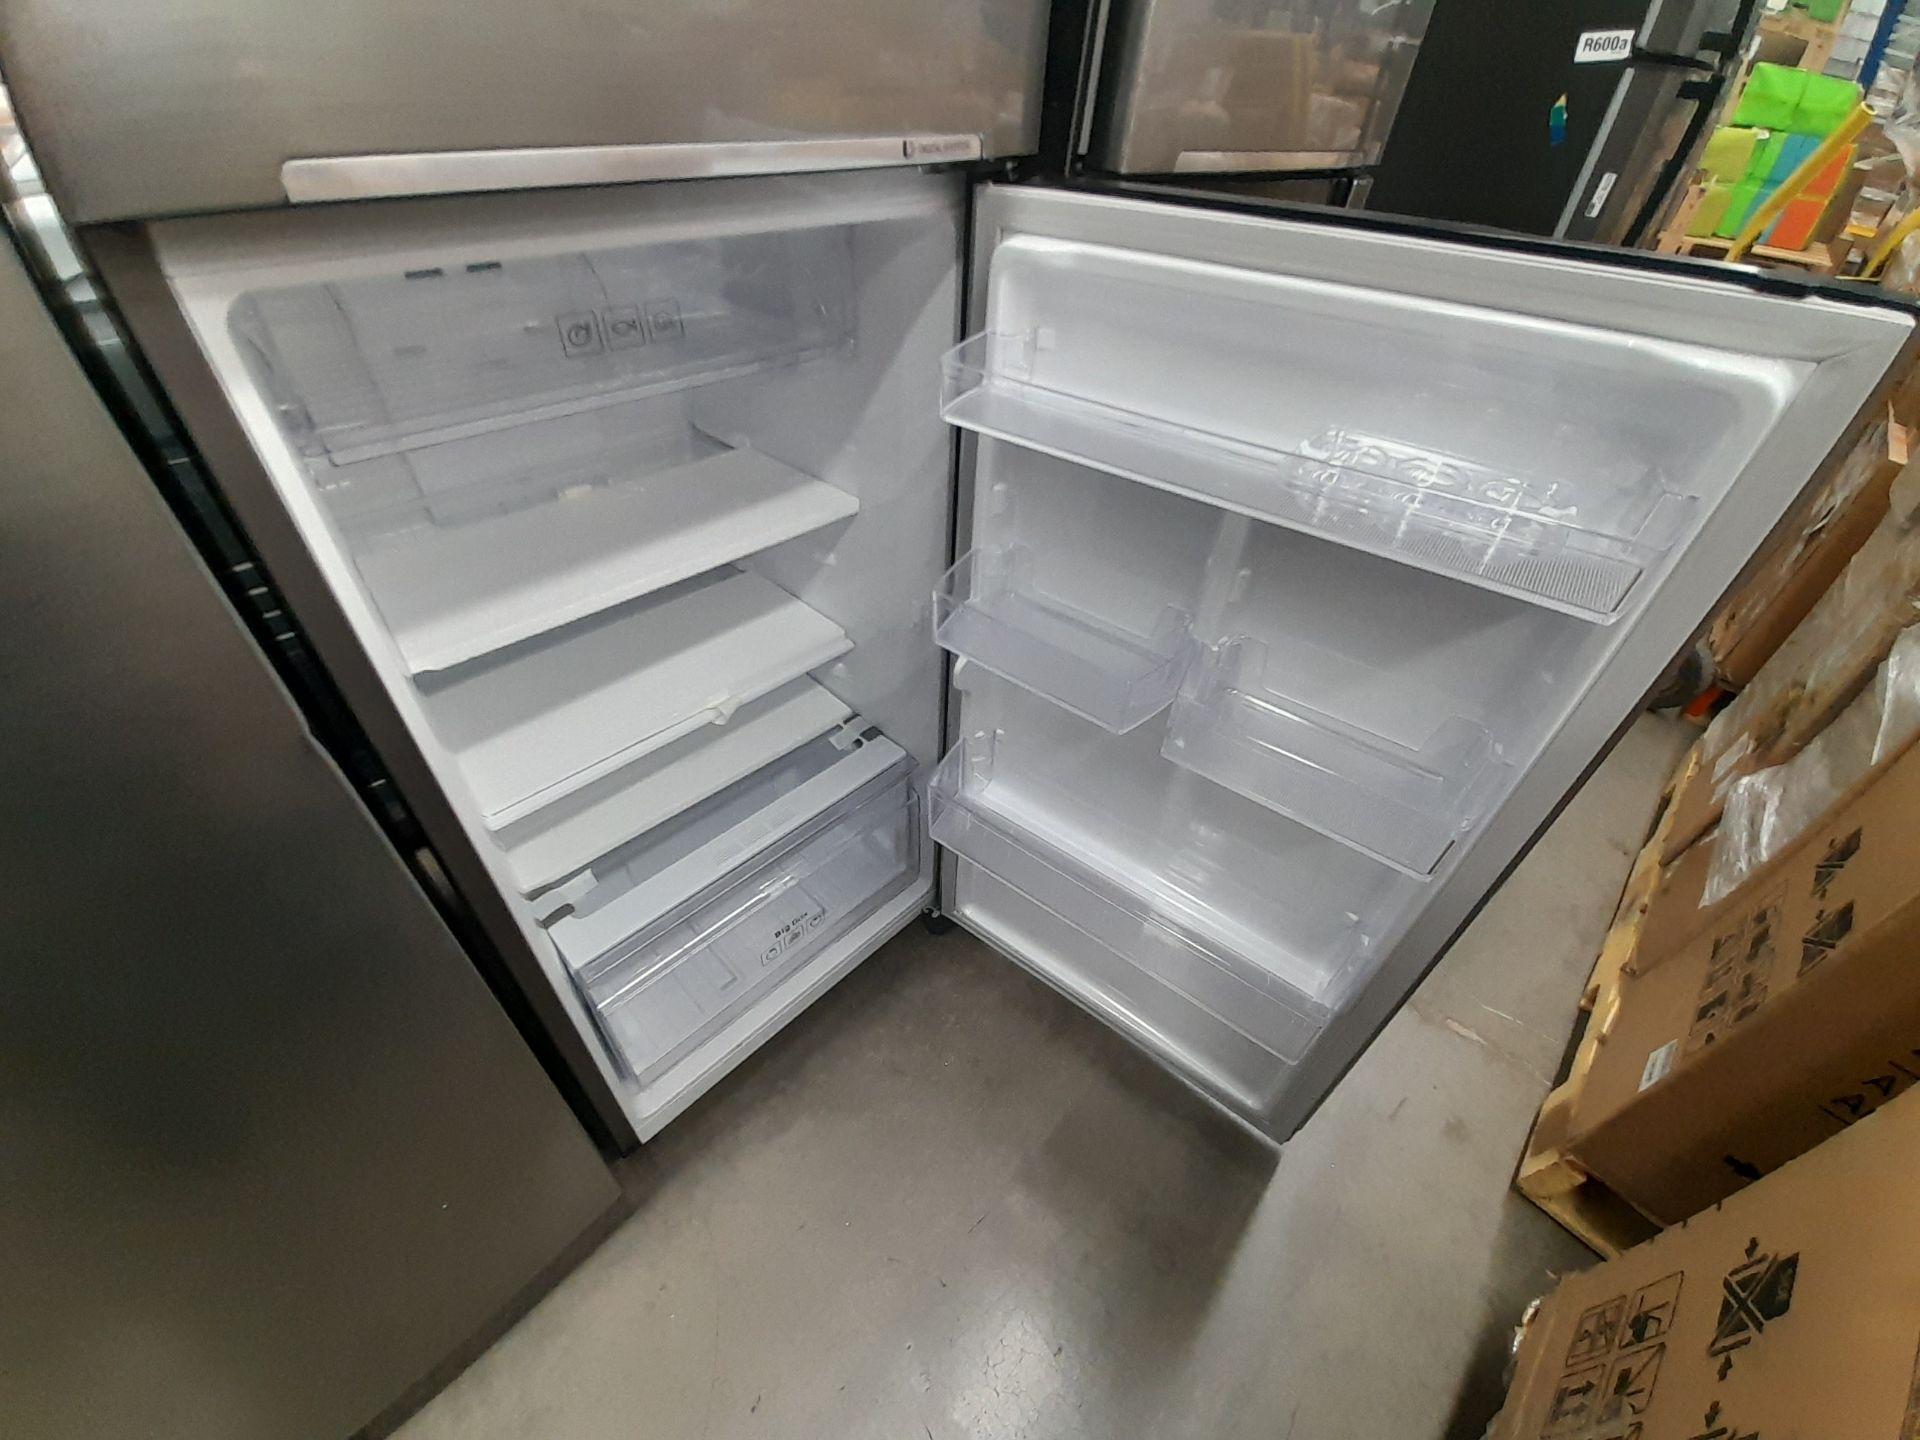 Lote de 2 refrigeradores contiene: 1 refrigerador Marca SAMSUNG, Modelo RT29A500JS8, Serie 03920W, - Image 5 of 8